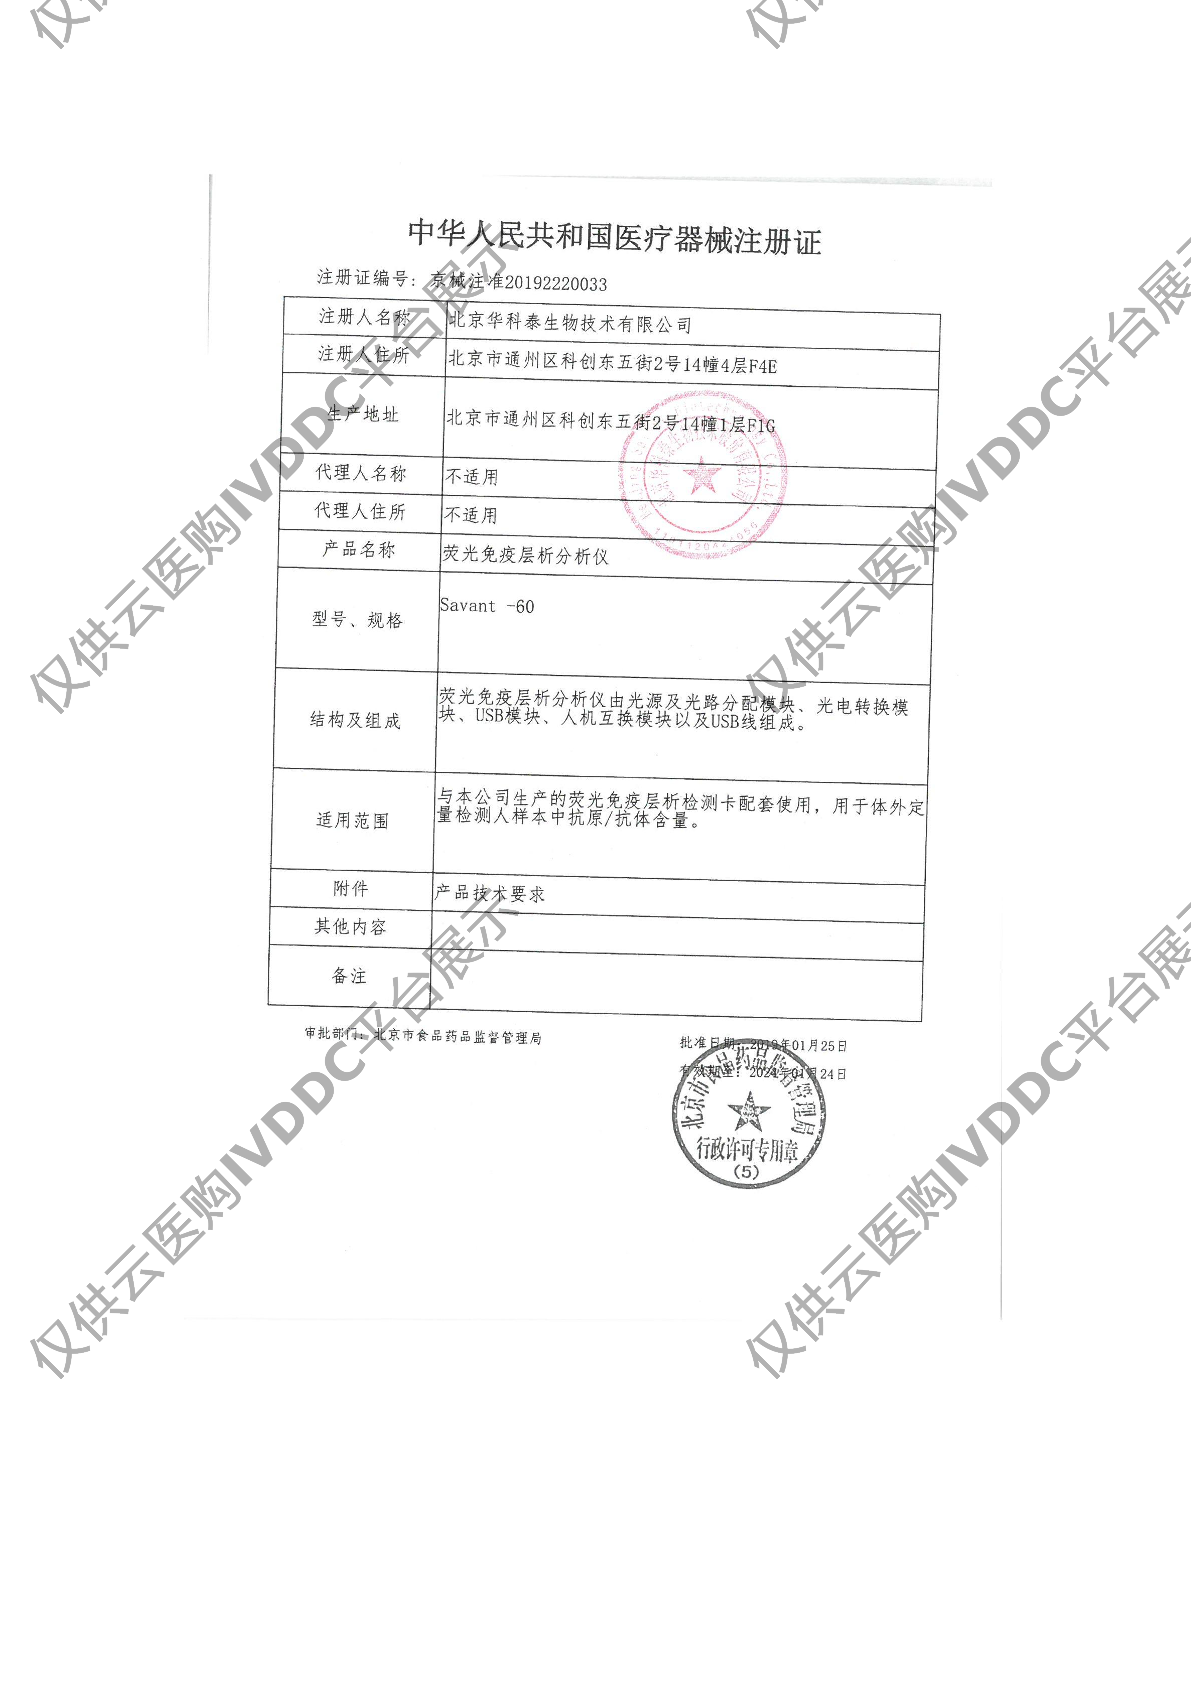 【华科泰】荧光免疫层析分析仪Savant-60注册证